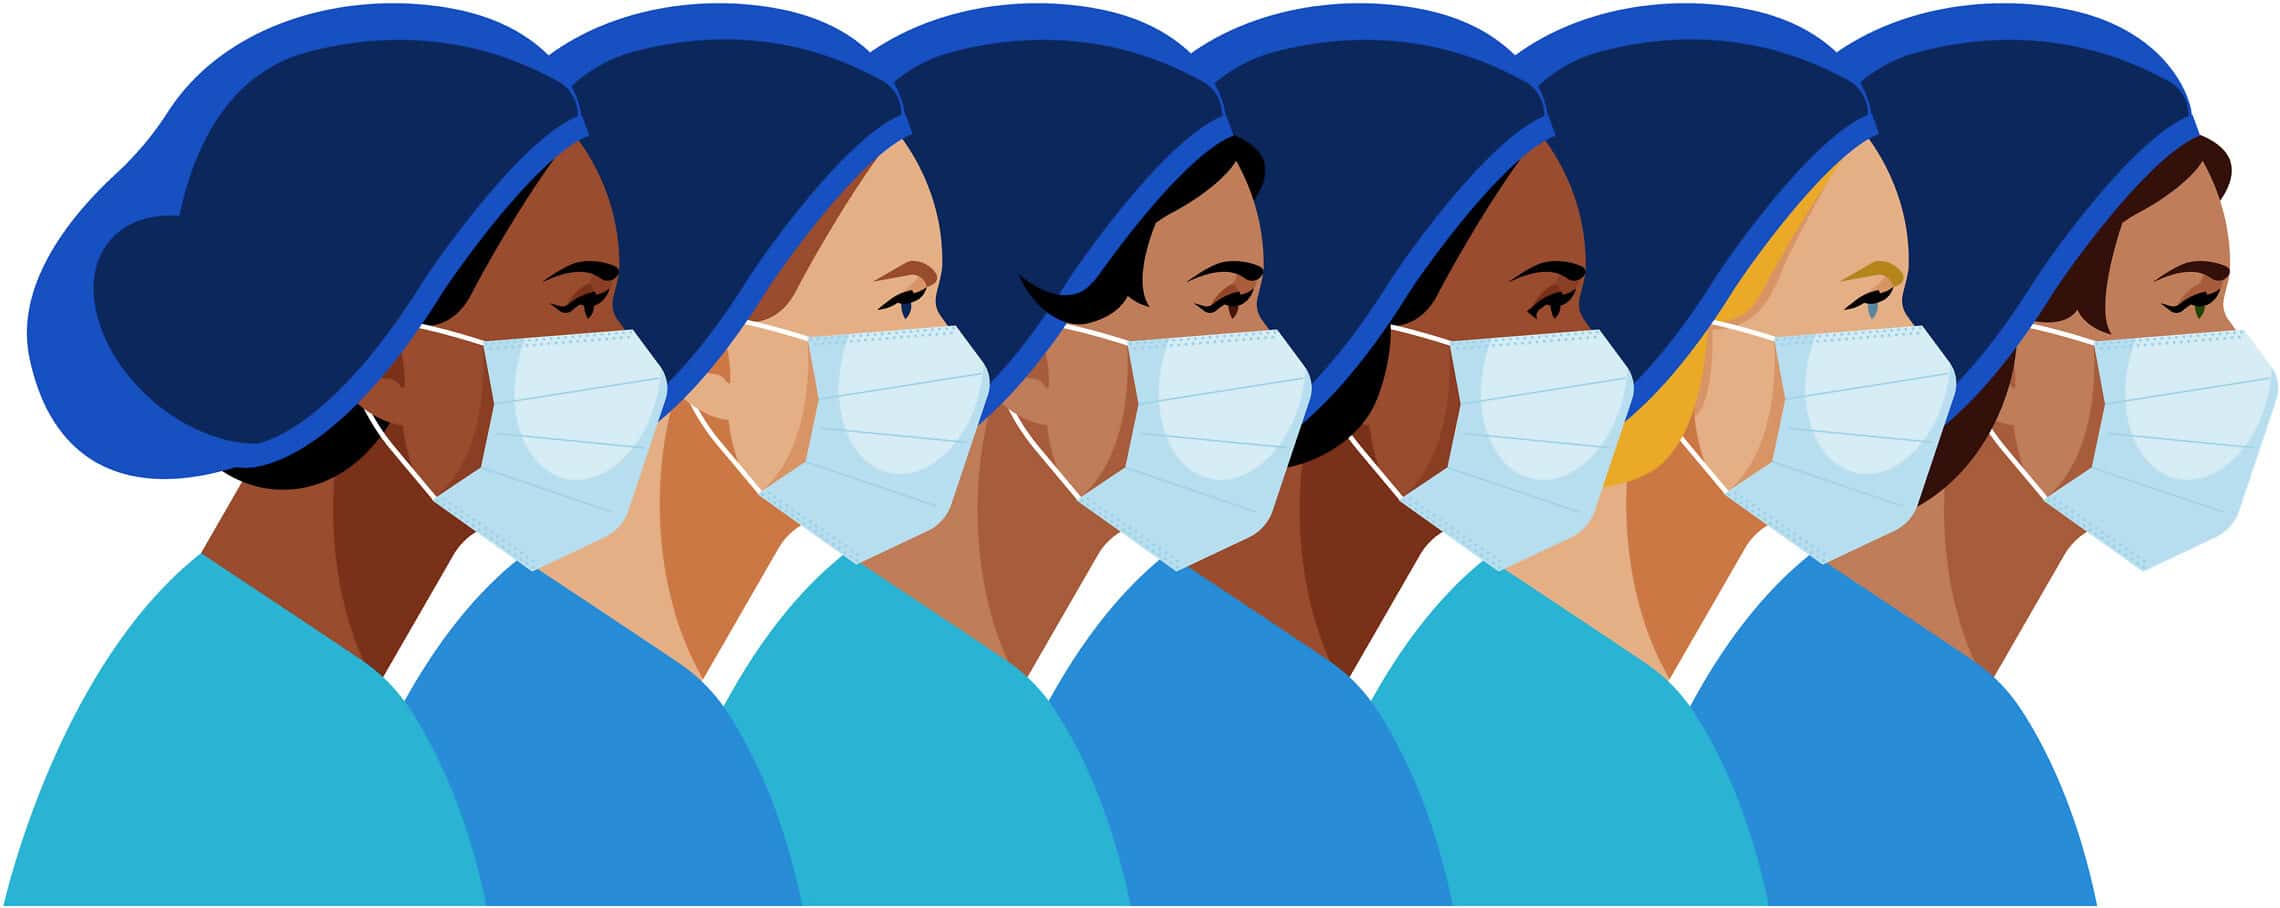 נשים בצוות רפואי. אילוסטרציה (צילום: iStock)